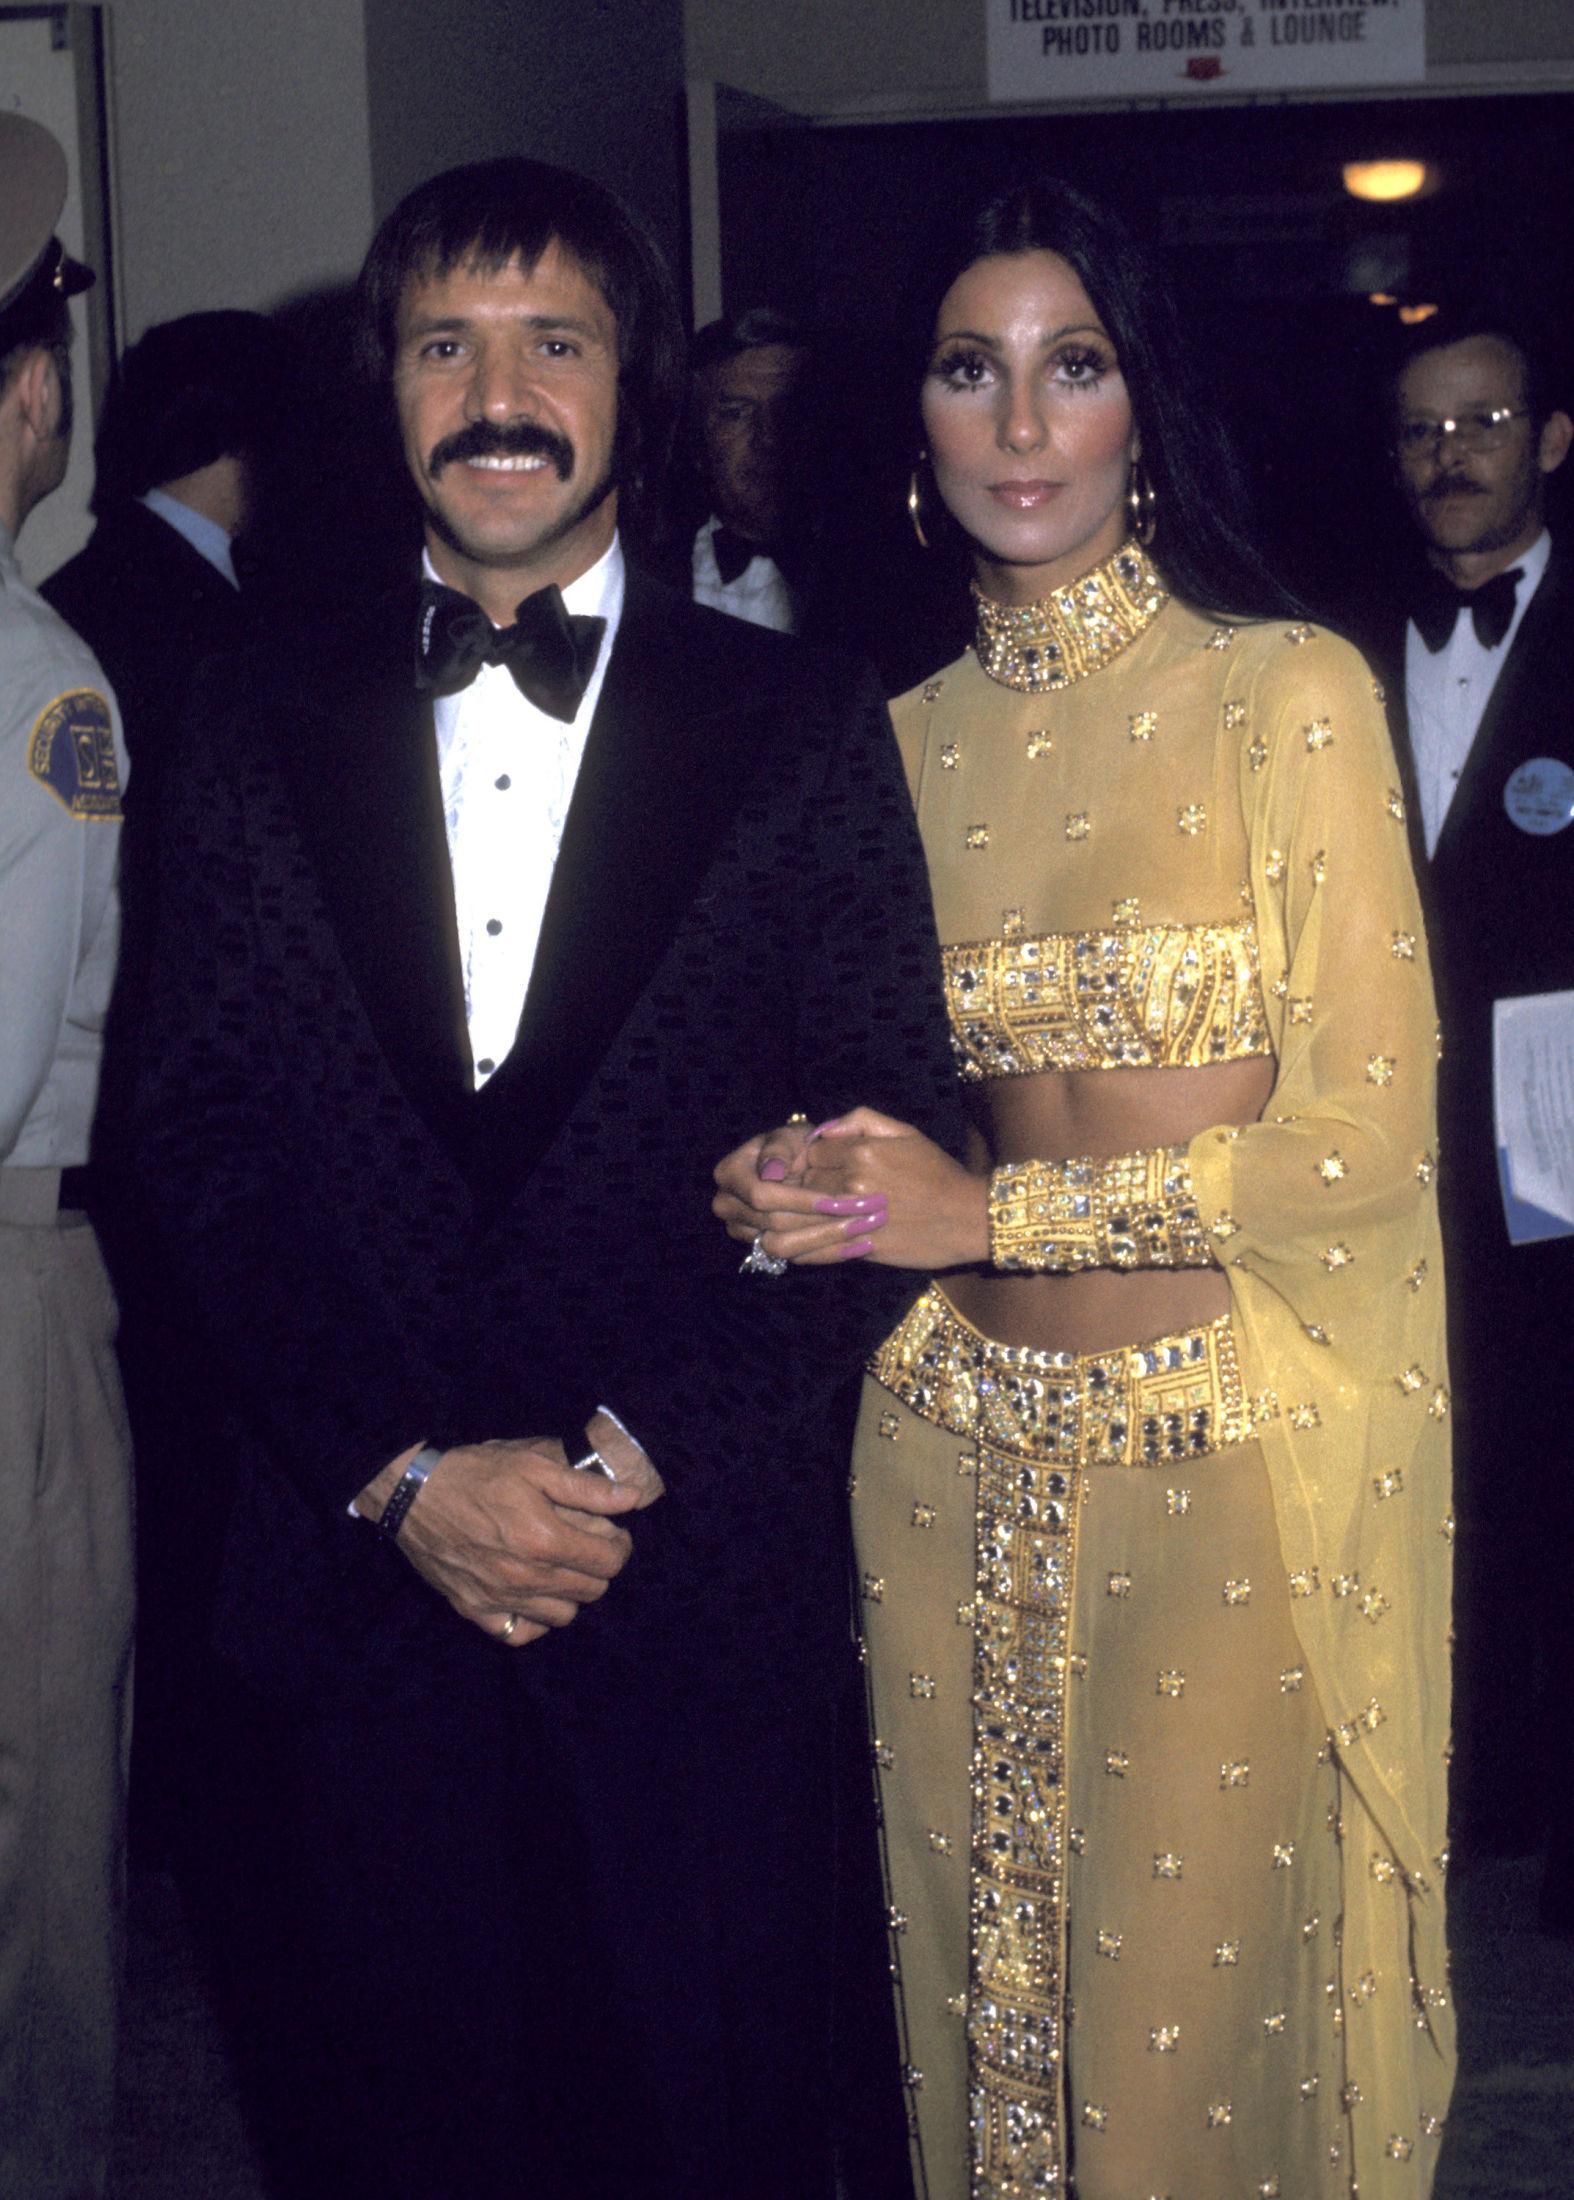 TIDENES MEST IKONISKE? Sonny Bono og Cher under utdelingen i 1973. Chers antrekk blir husket som et av Oscar-utdelingens mest ikoniske. De to var gift mellom 1964 og 1975. Foto: Ron Galella/Getty Images.